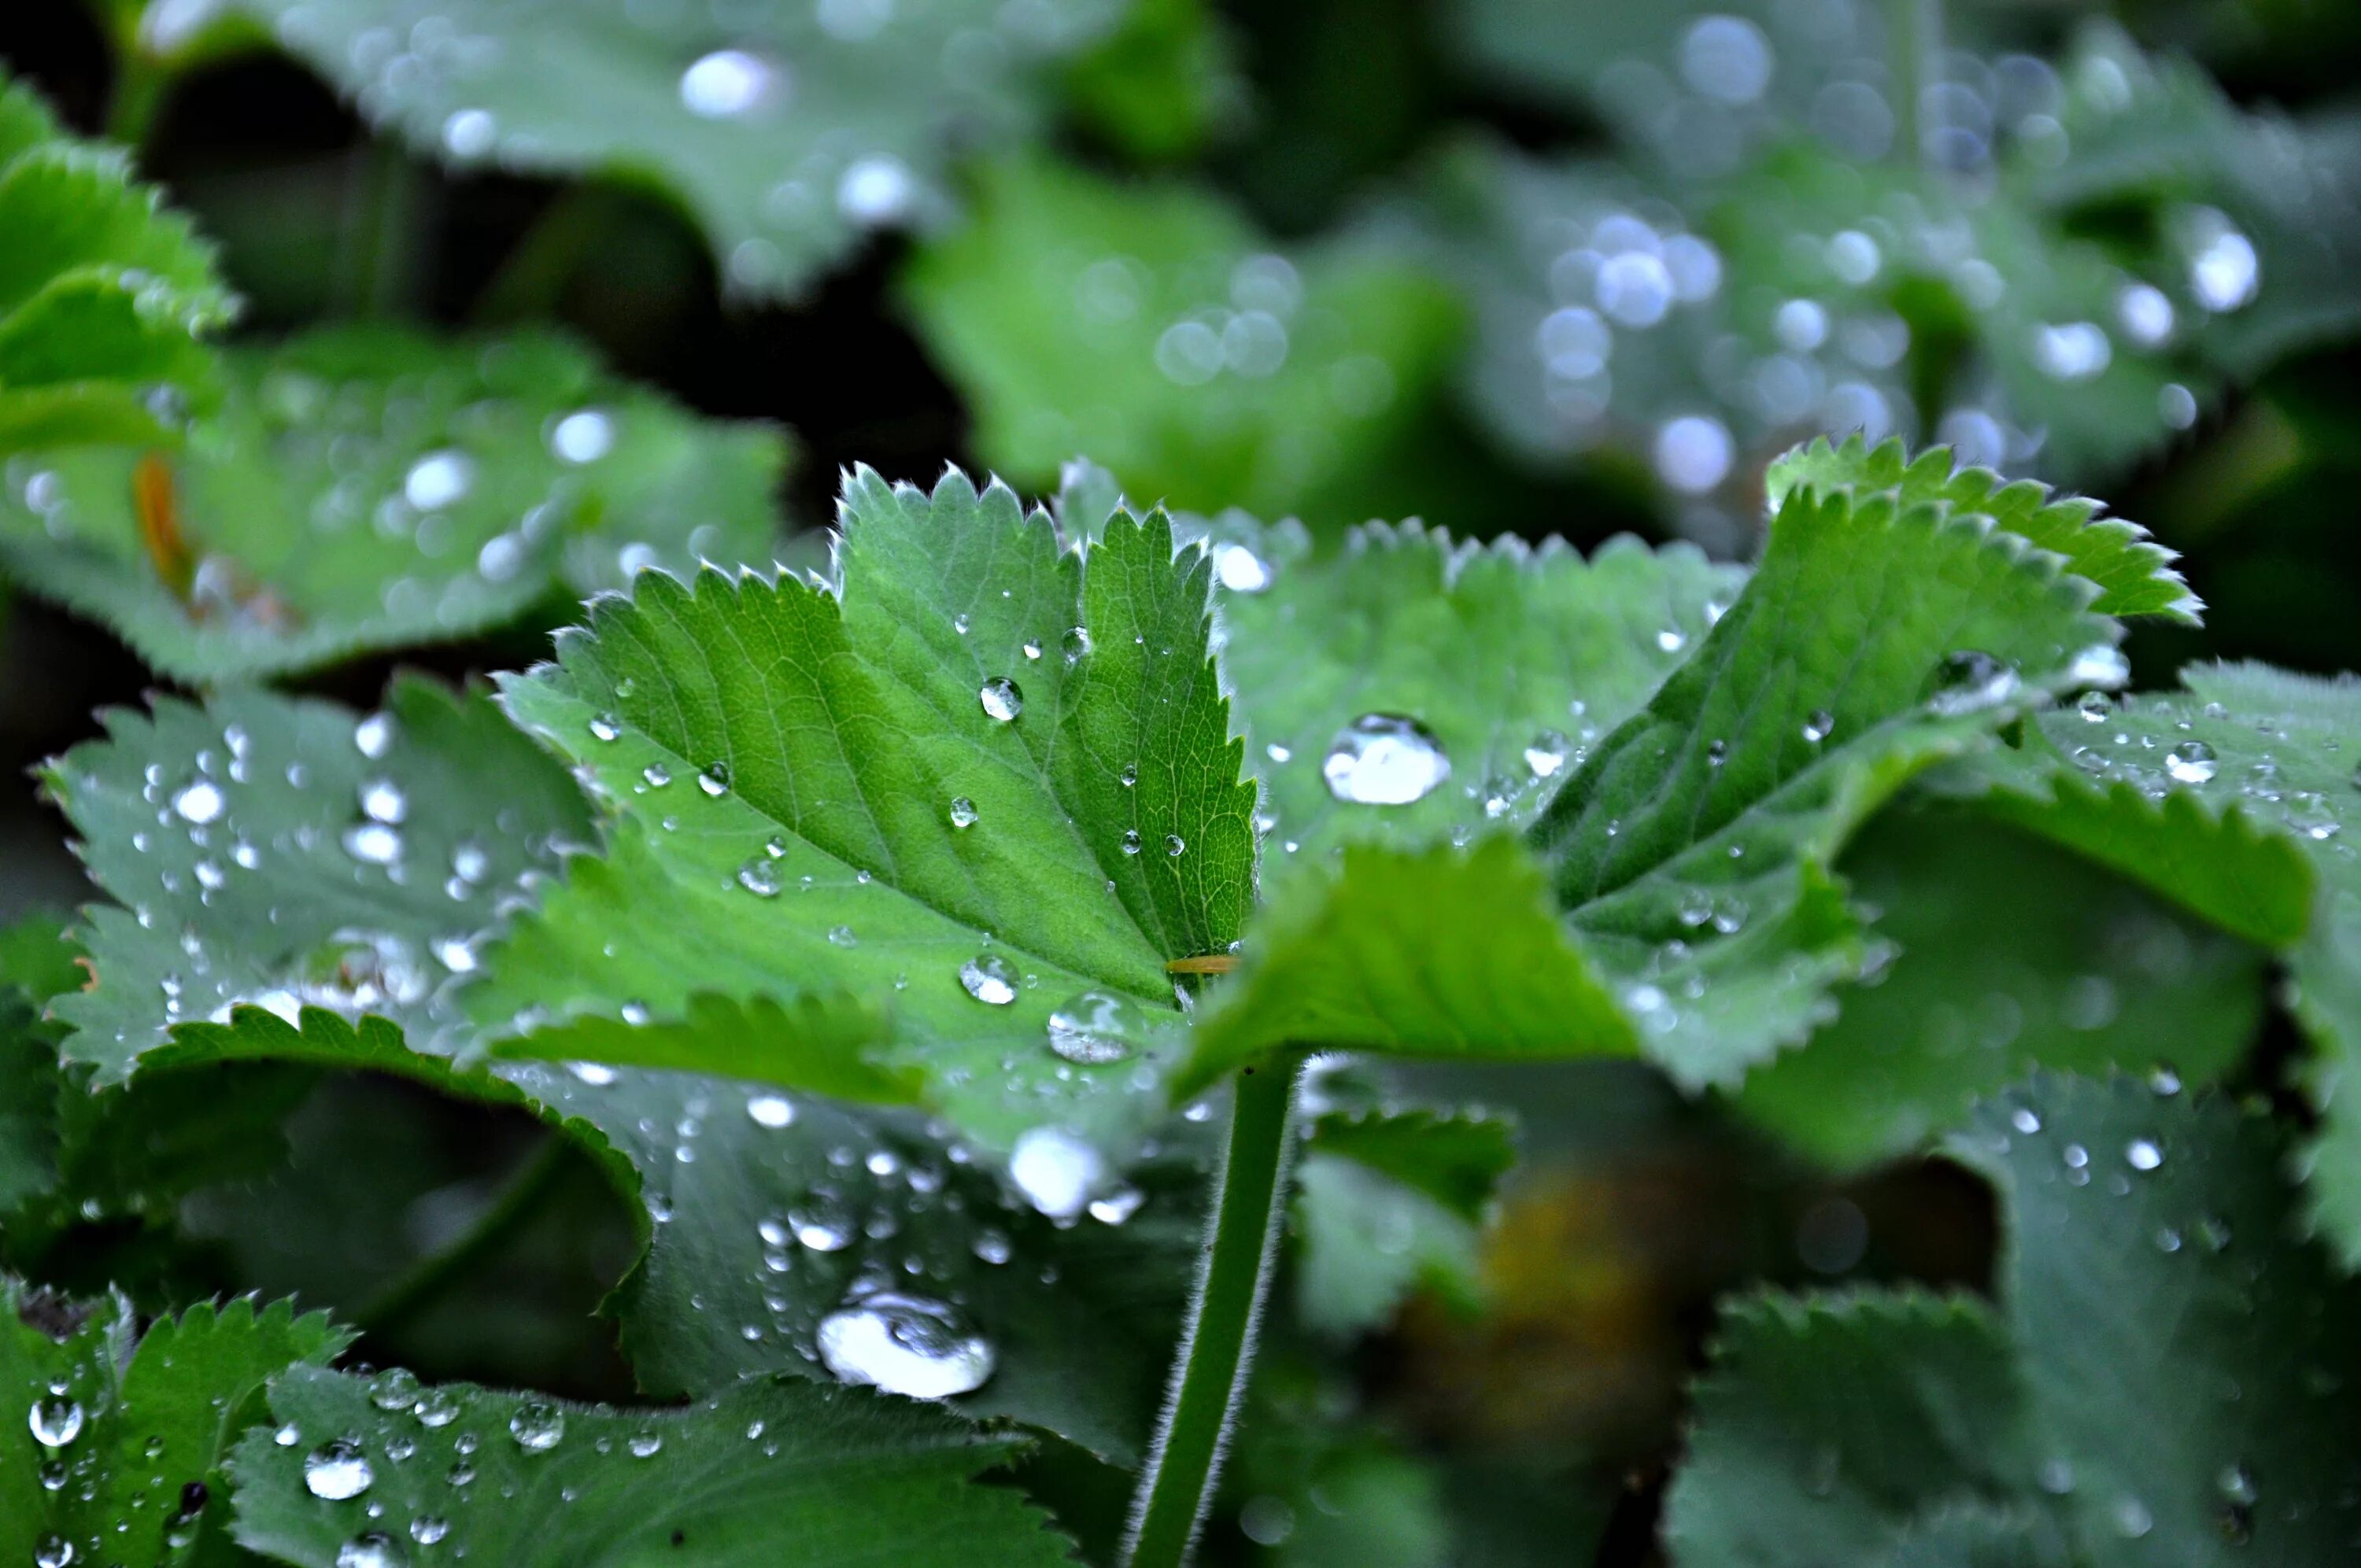 Капли дождя на листьях. Капельки воды на листьях цветка. Как пли воды натлистьях. Растения с капельками воды.